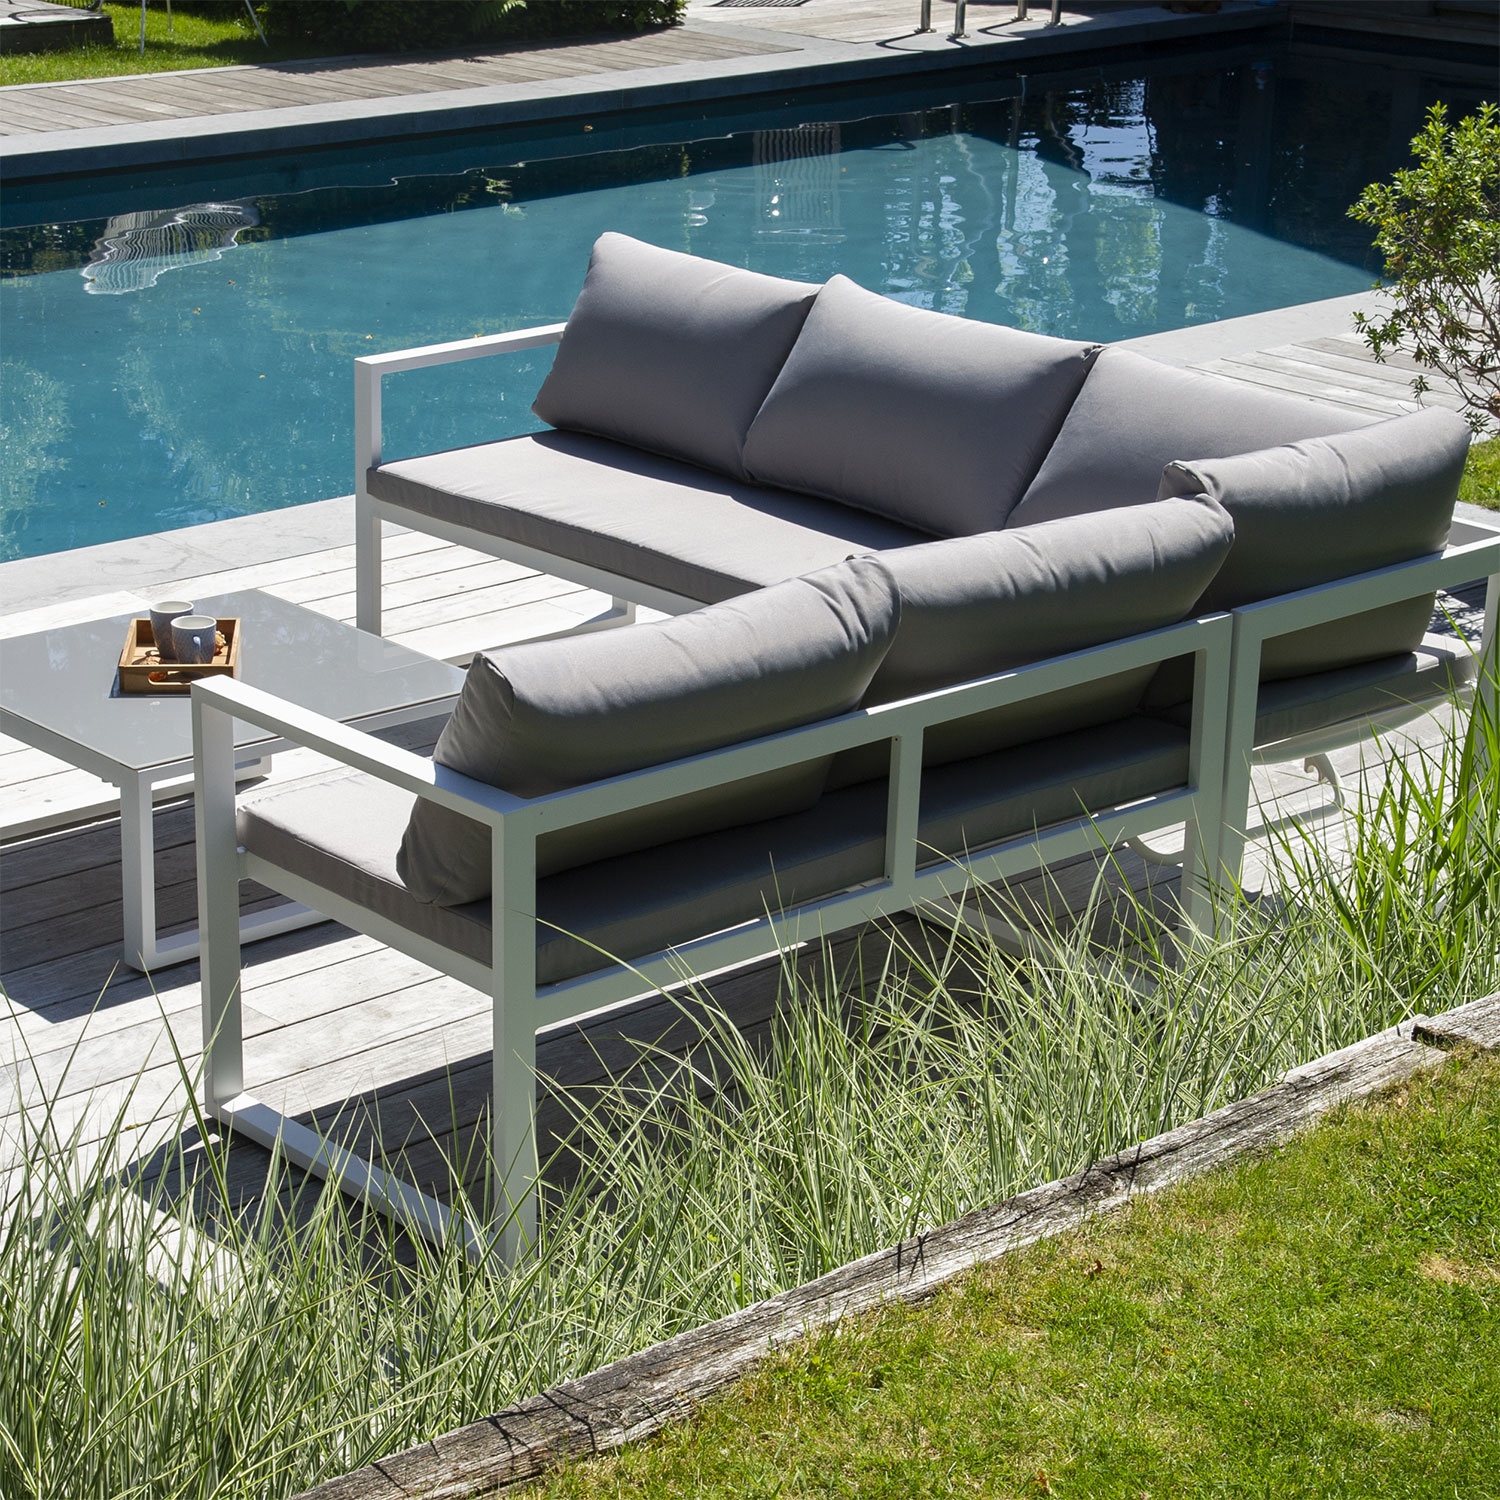 Set di mobili da giardino modulari IBIZA in tessuto grigio 4 posti - alluminio bianco